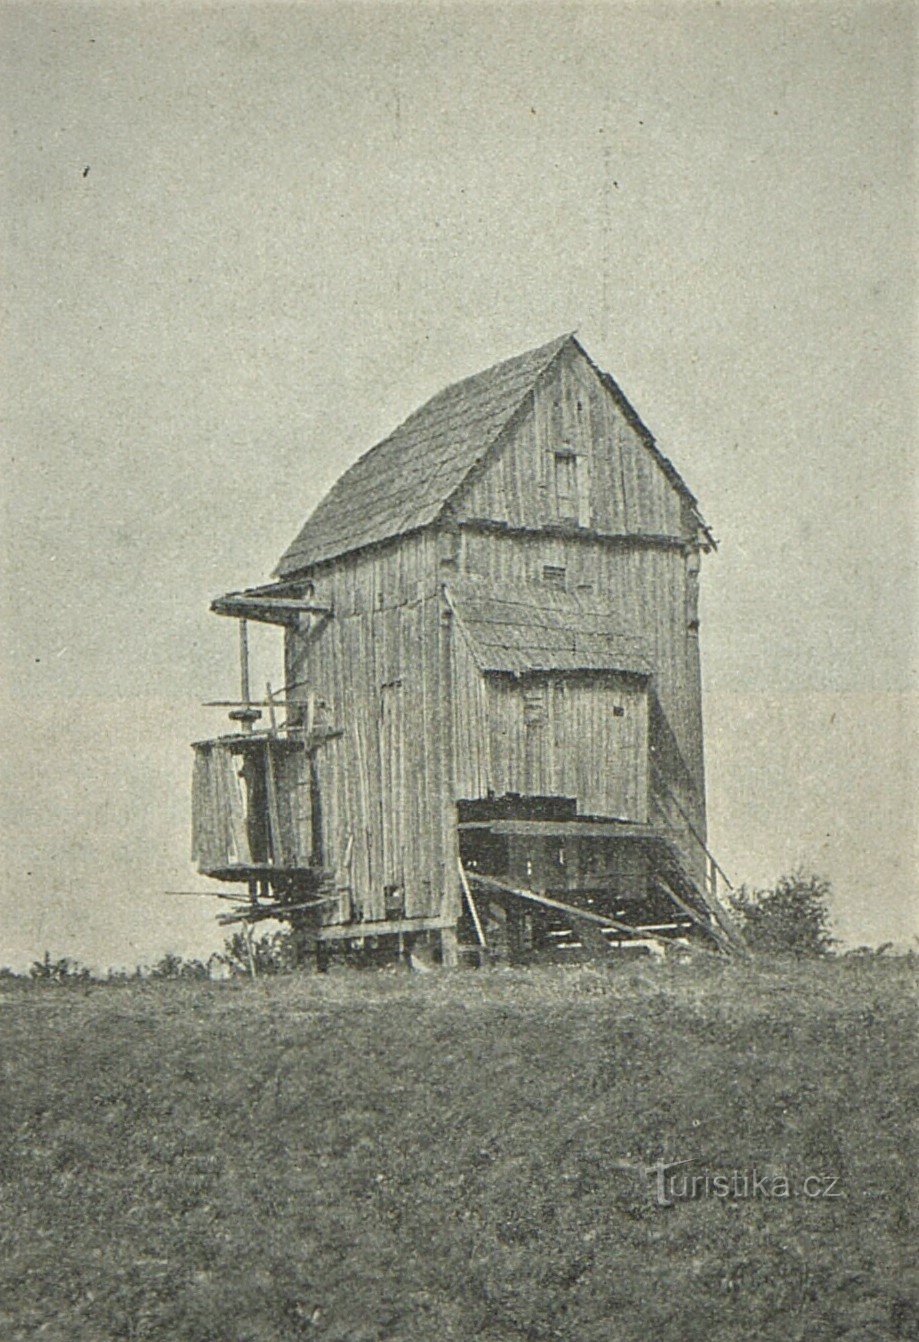 Foto van de Doblnice-windmolen uit 1909